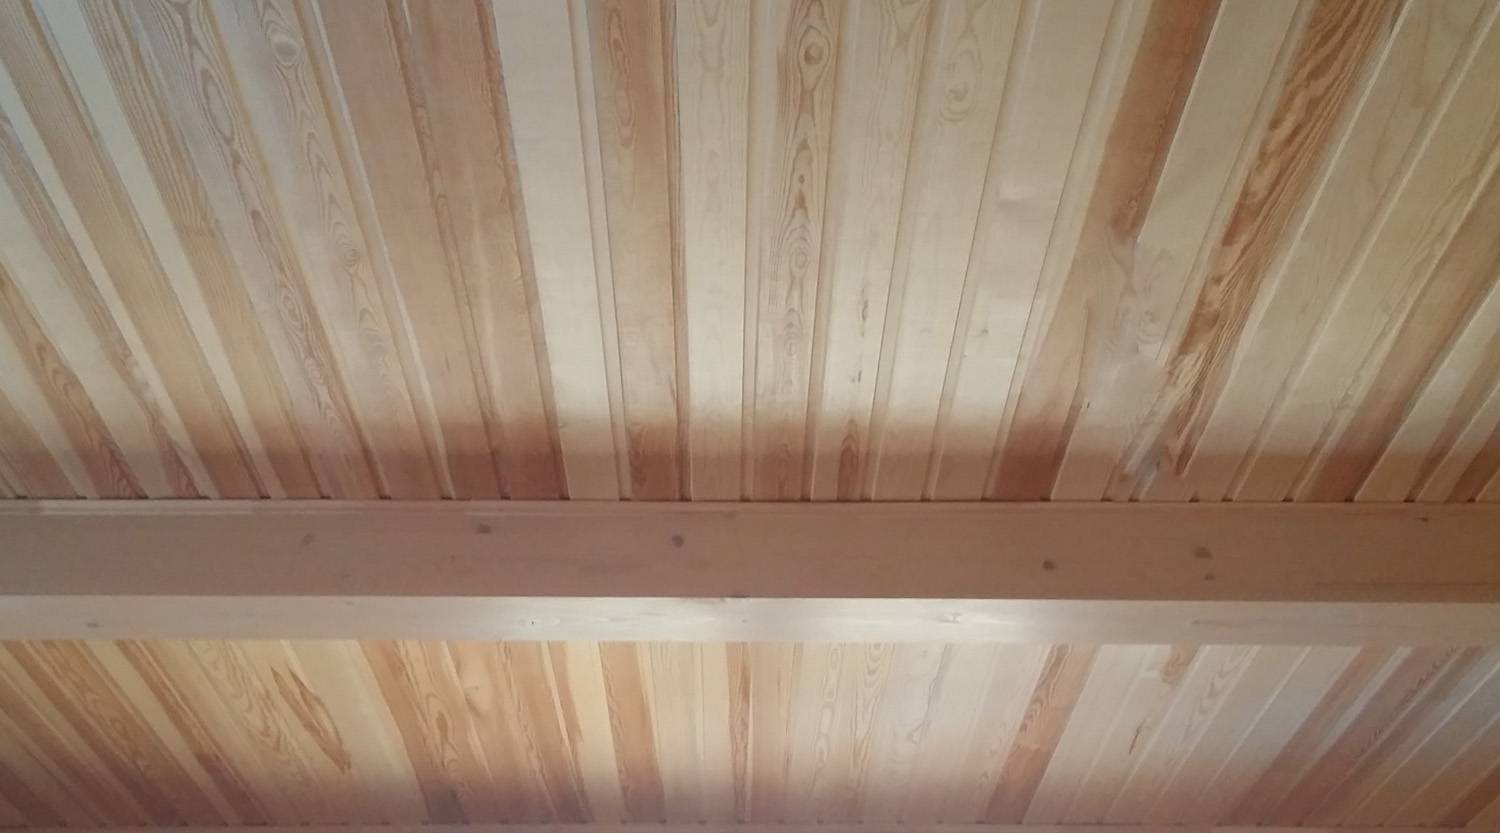 Чем обшить потолок в деревянном доме внутри — 5 наилучших вариантов